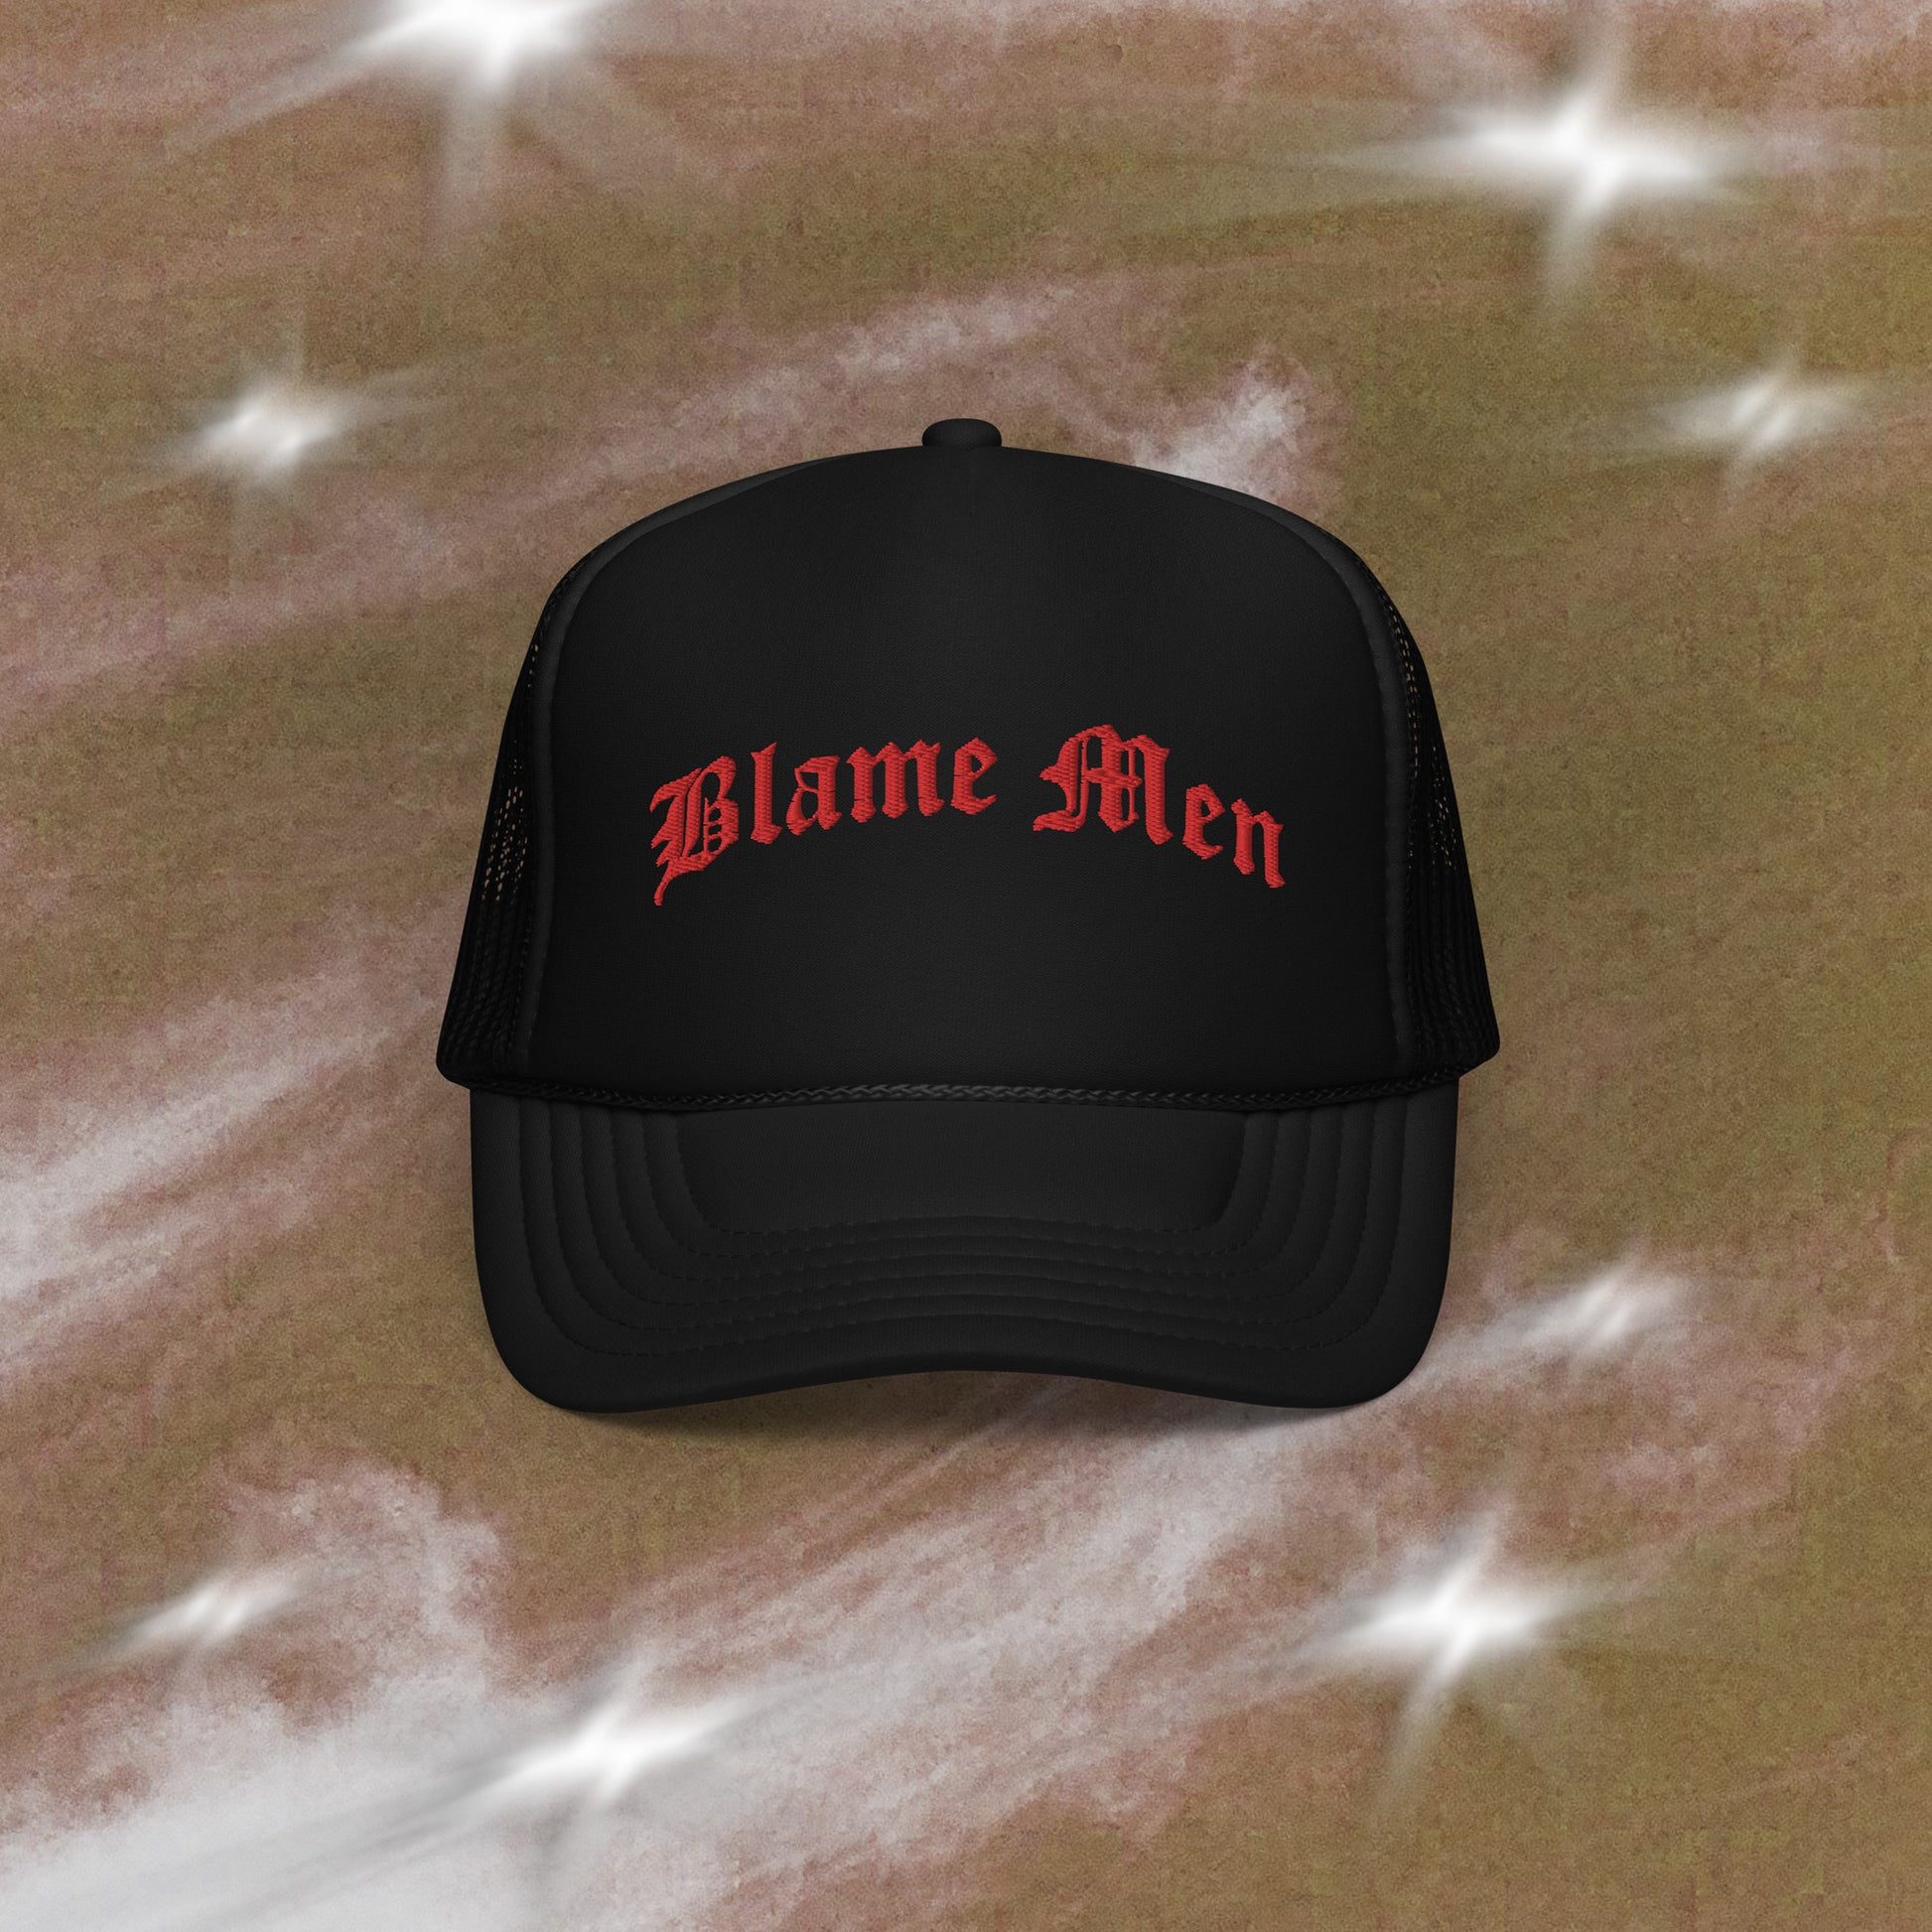 Blame Men trucker hat